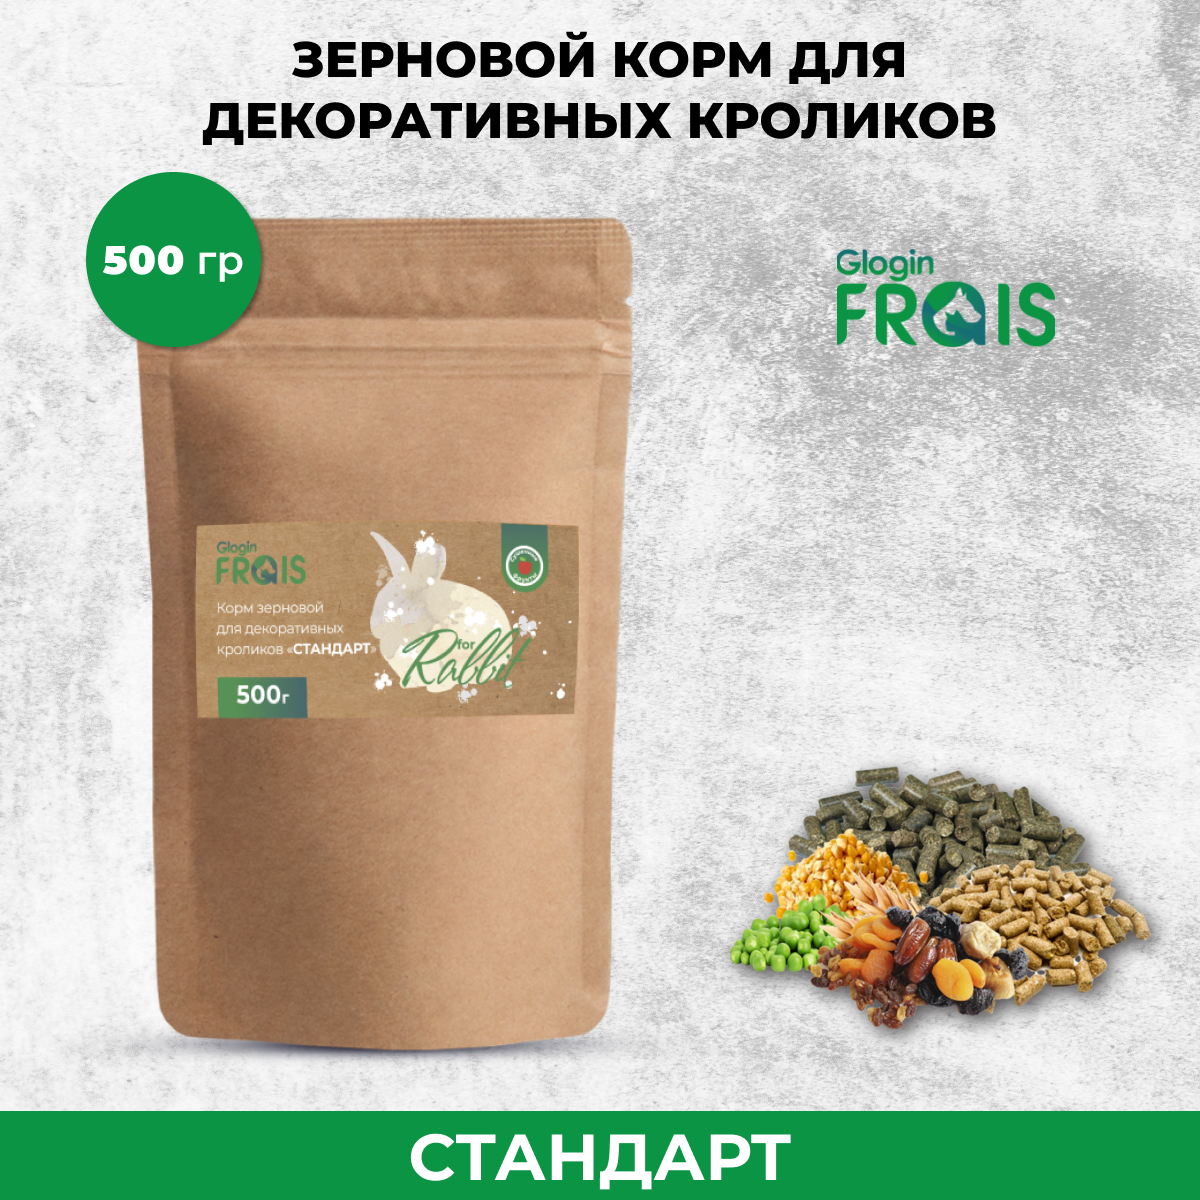 Сухой корм для декоративных кроликов Glogin FRAIS Стандарт, зерновой, 500 г